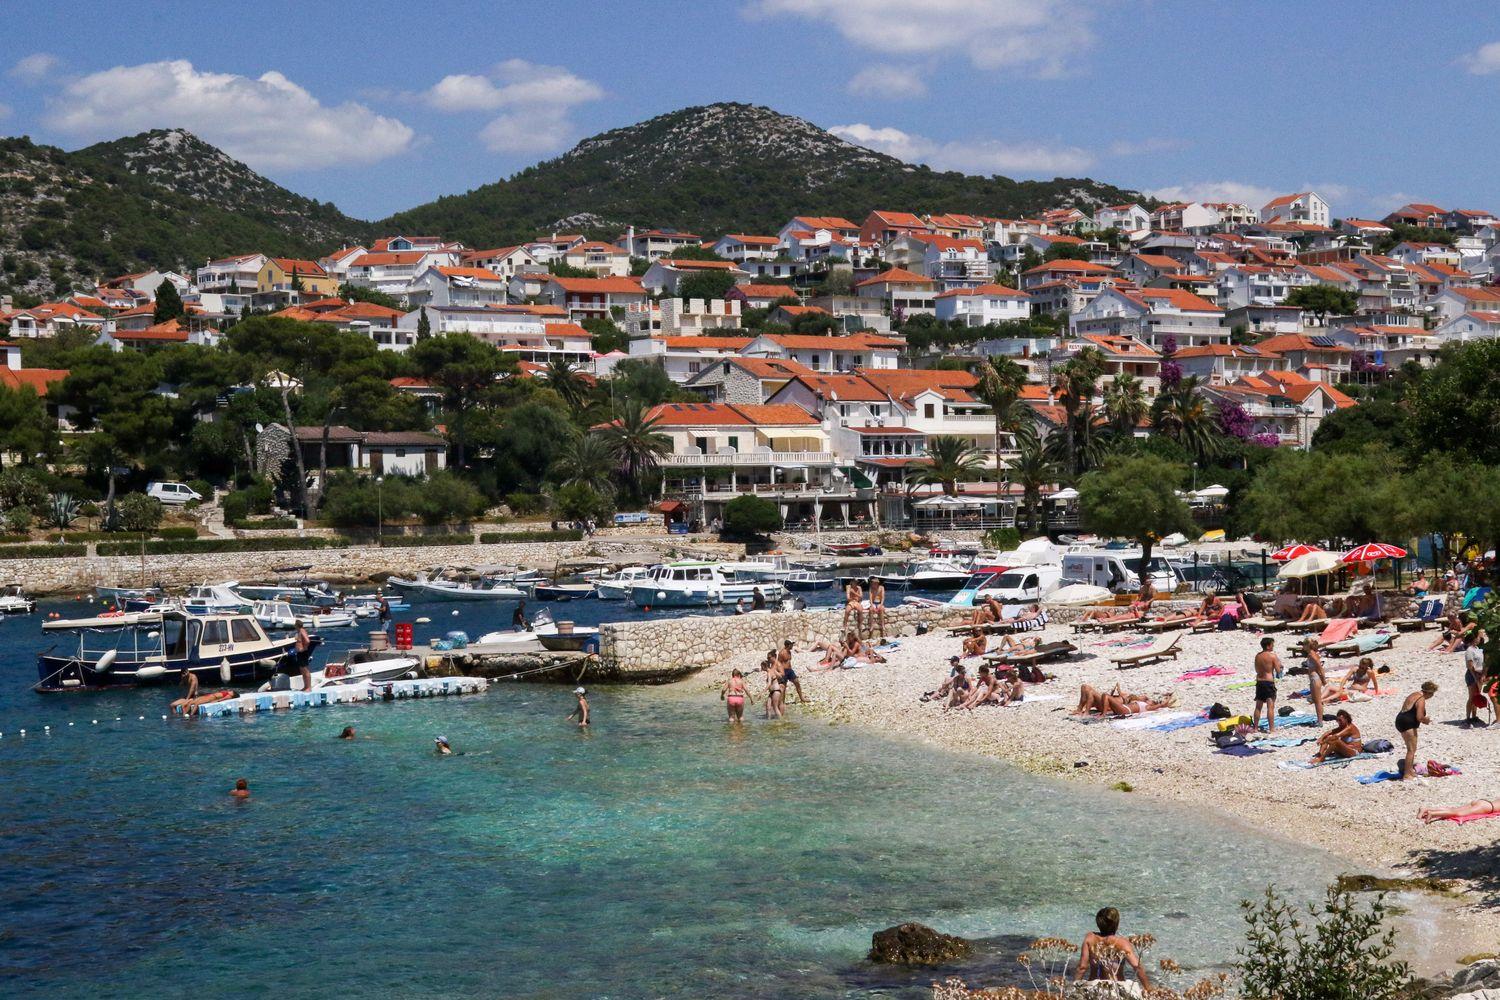 Altstadt und Touristenzentrum Hvar bei Mittagssonne, umgeben von blauem Meer und ankernden Yachten